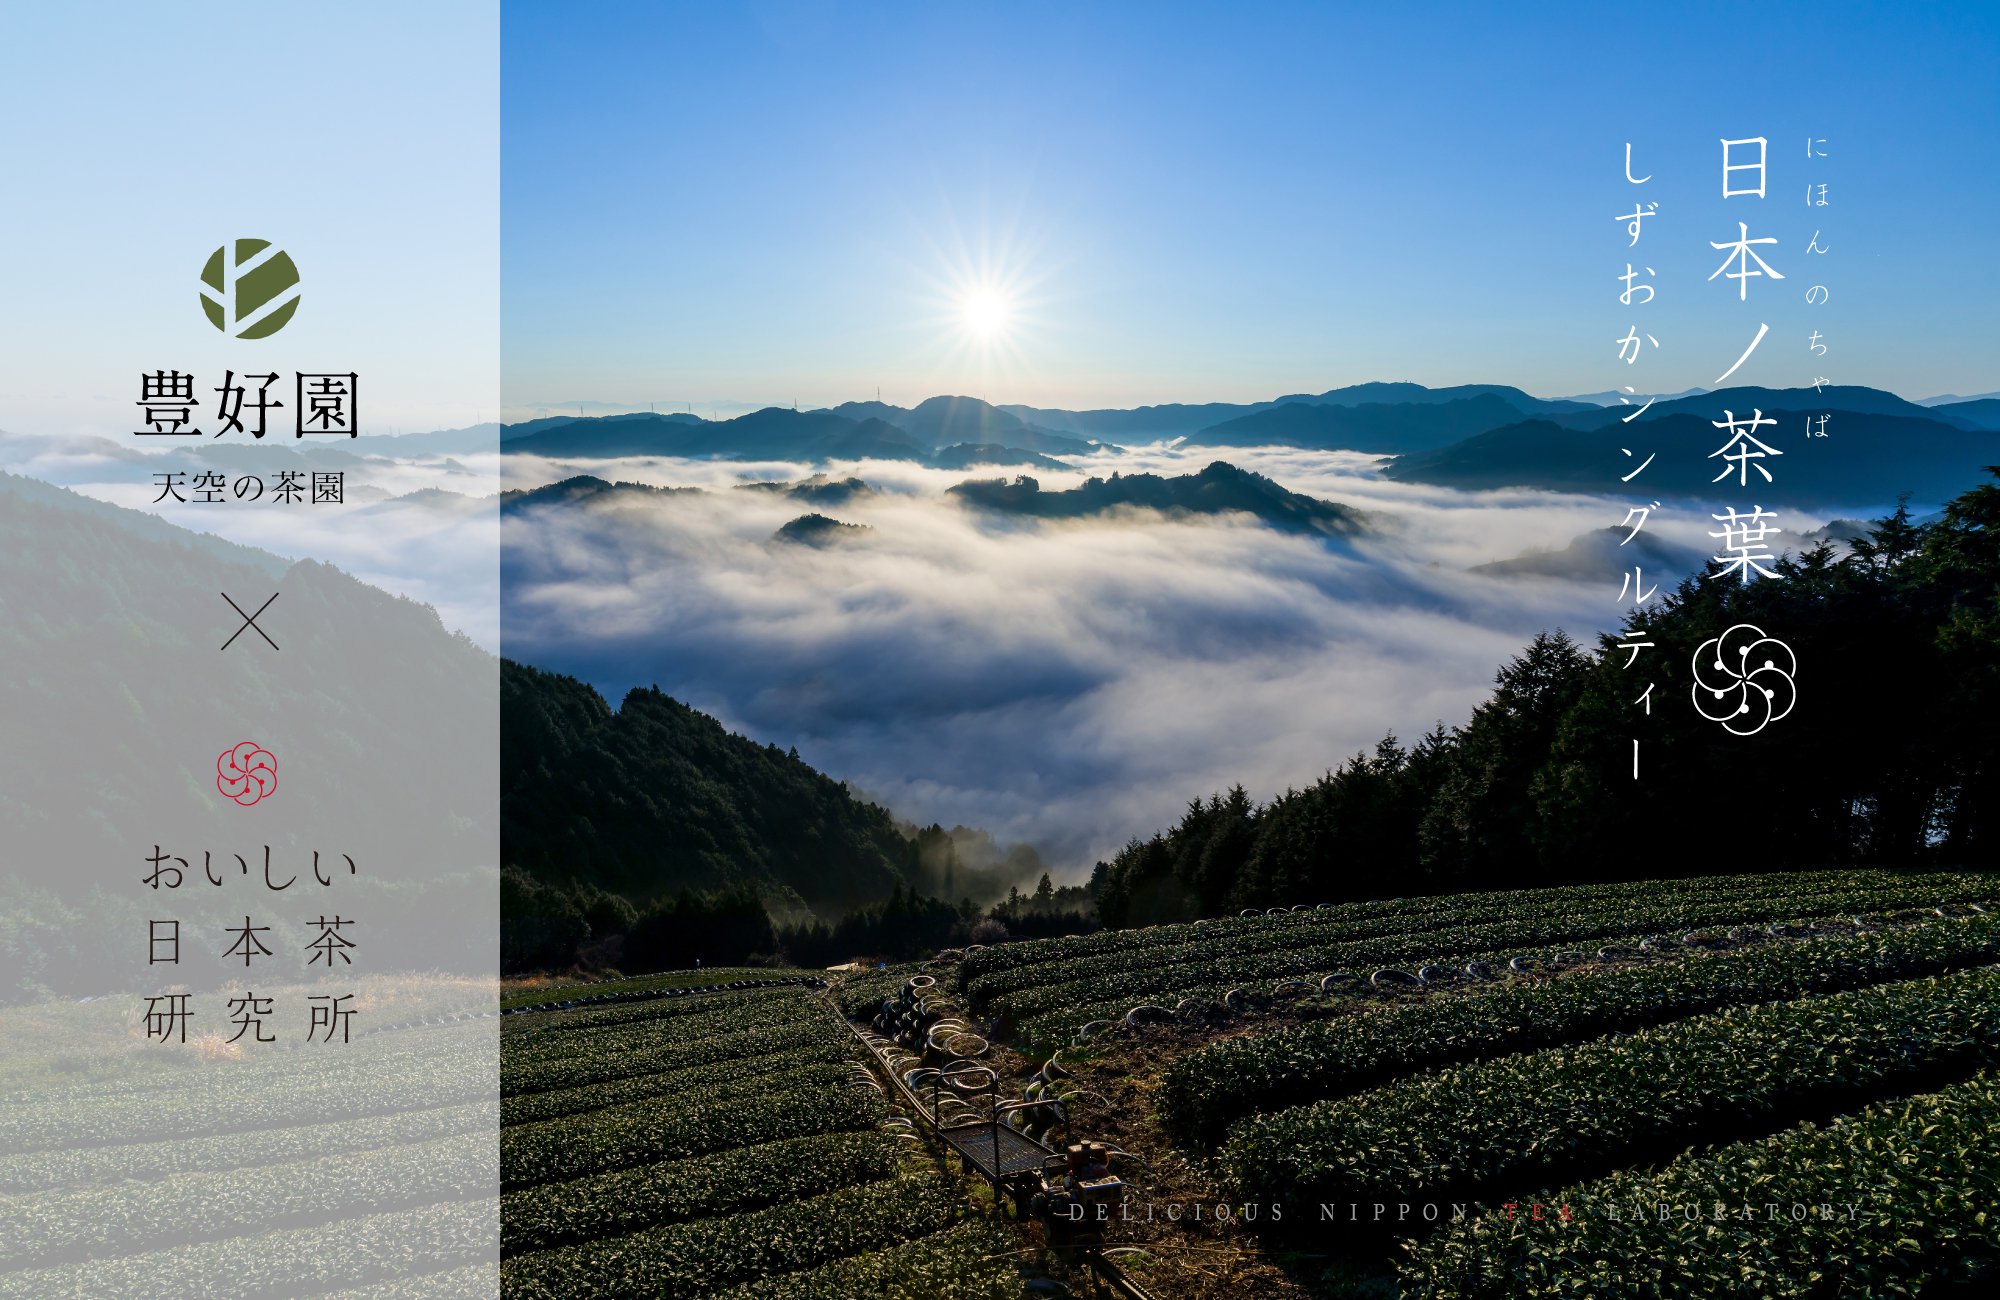 静岡山間部の両河内、雲海と富士を望む天空の茶畑「豊好園」と「おいしい日本茶研究所」のコラボによる浅蒸し単一品種茶